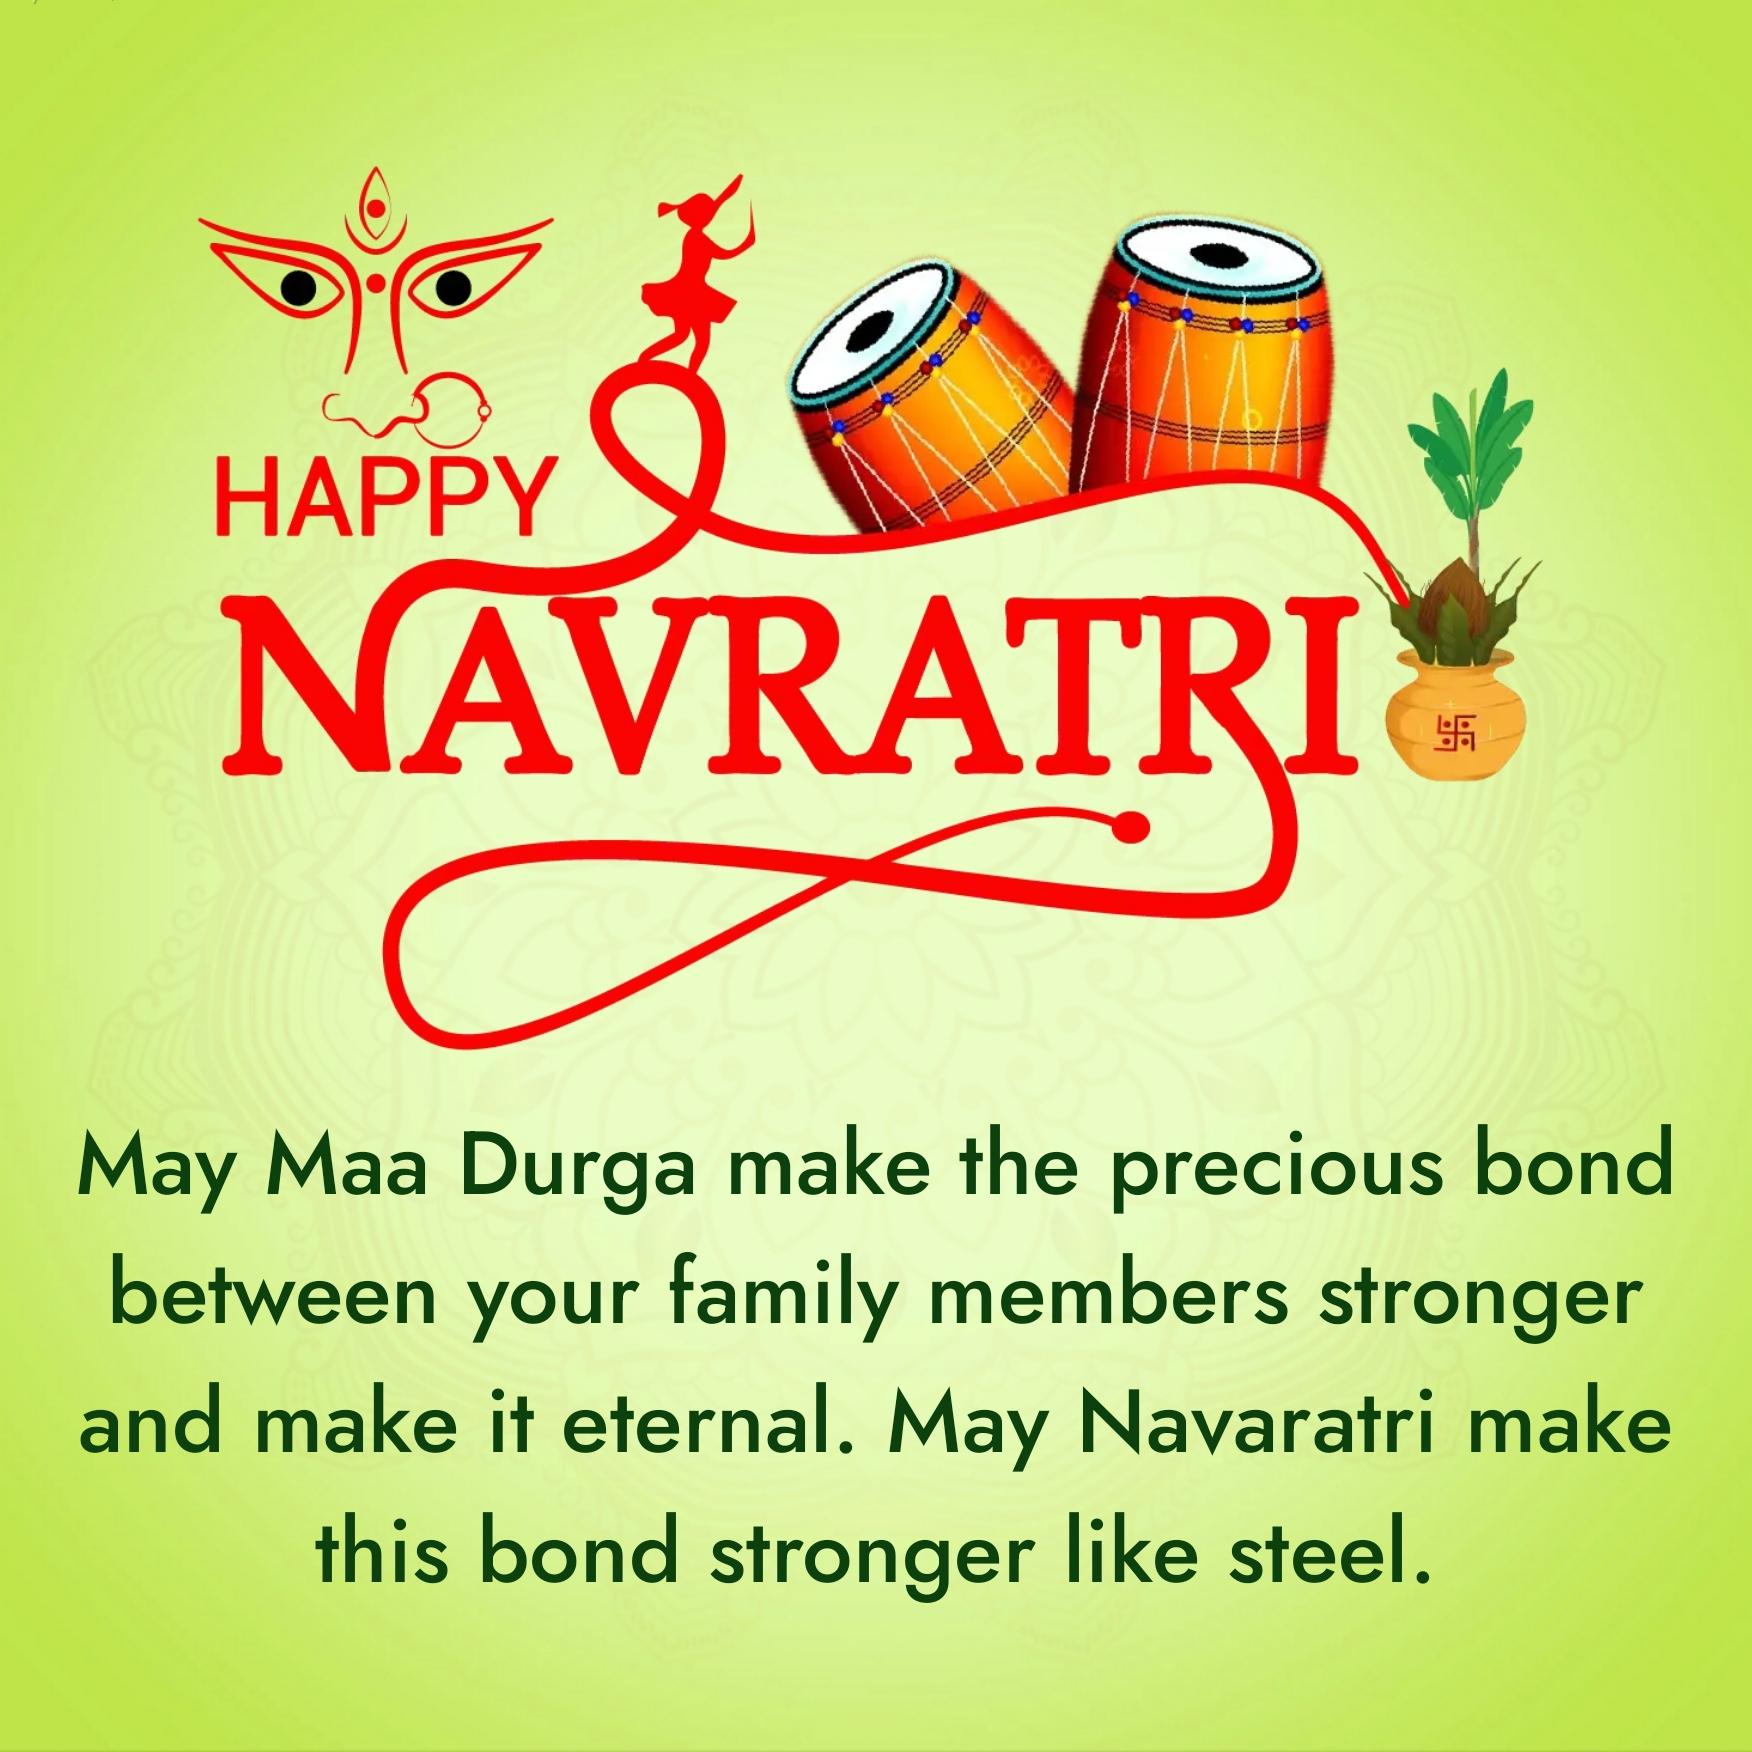 May Maa Durga make the precious bond between your family